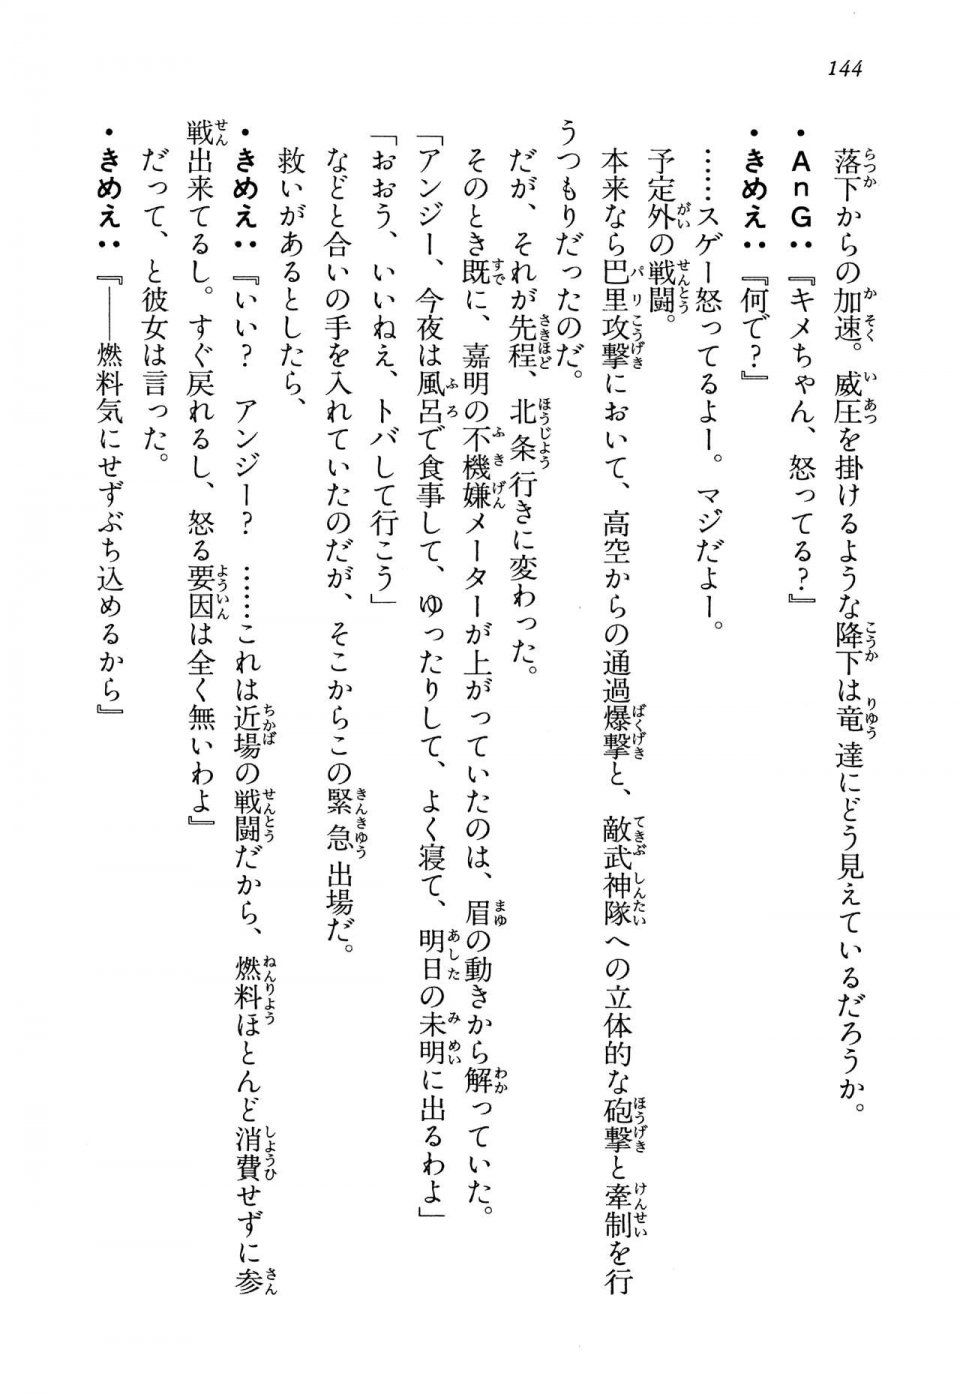 Kyoukai Senjou no Horizon LN Vol 13(6A) - Photo #144